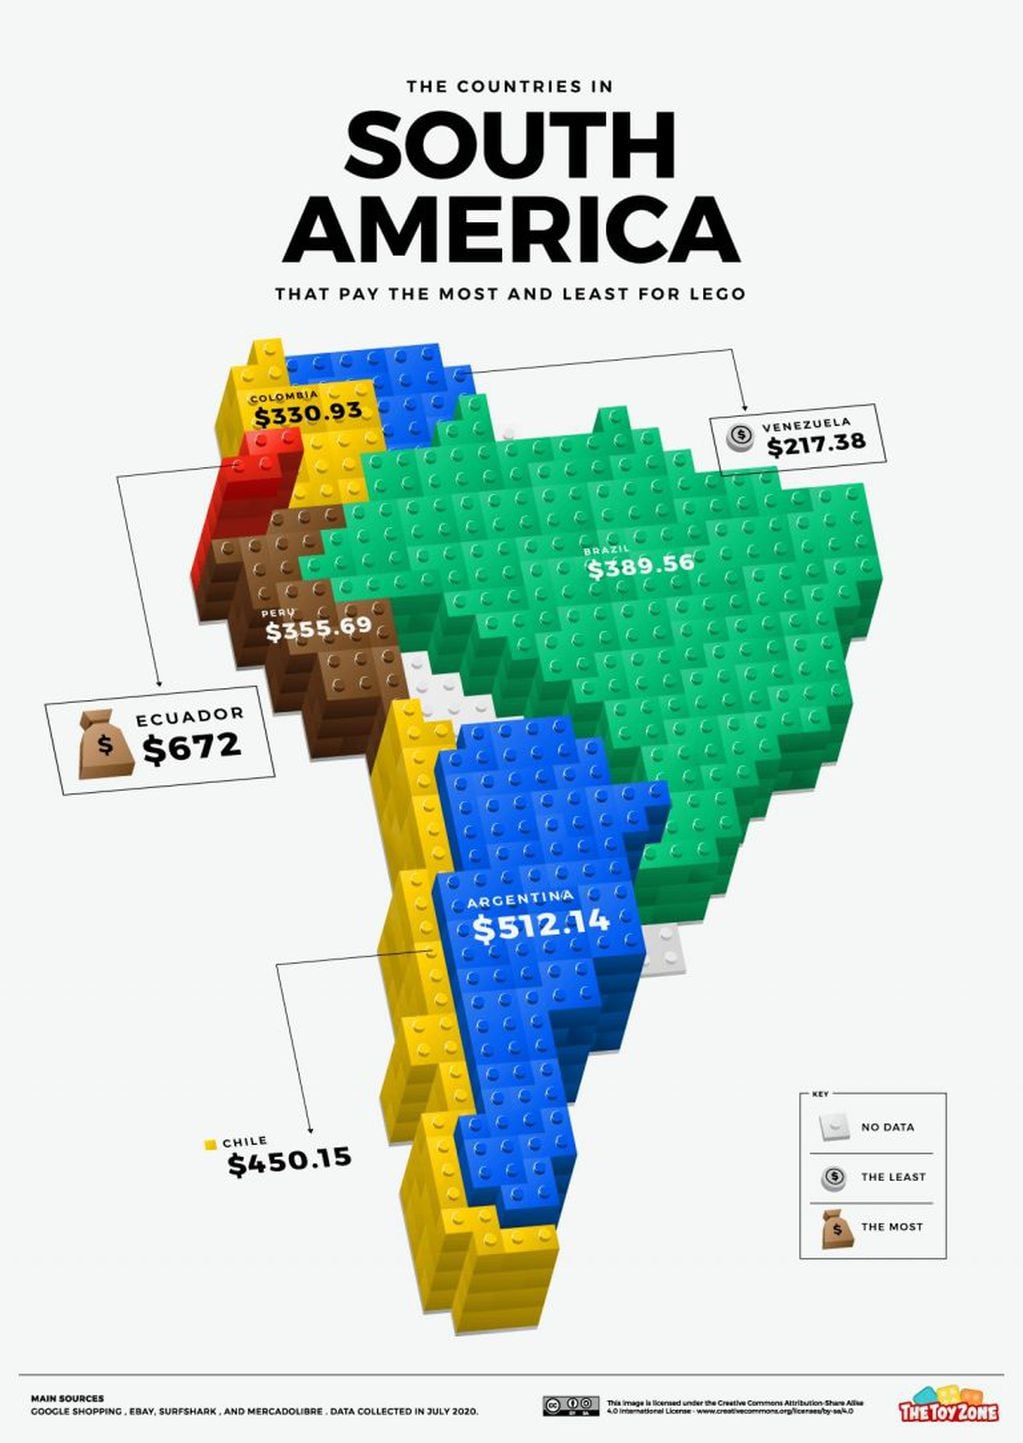 Precio Lego en América del Sur. (Foto: The Toy Zone)